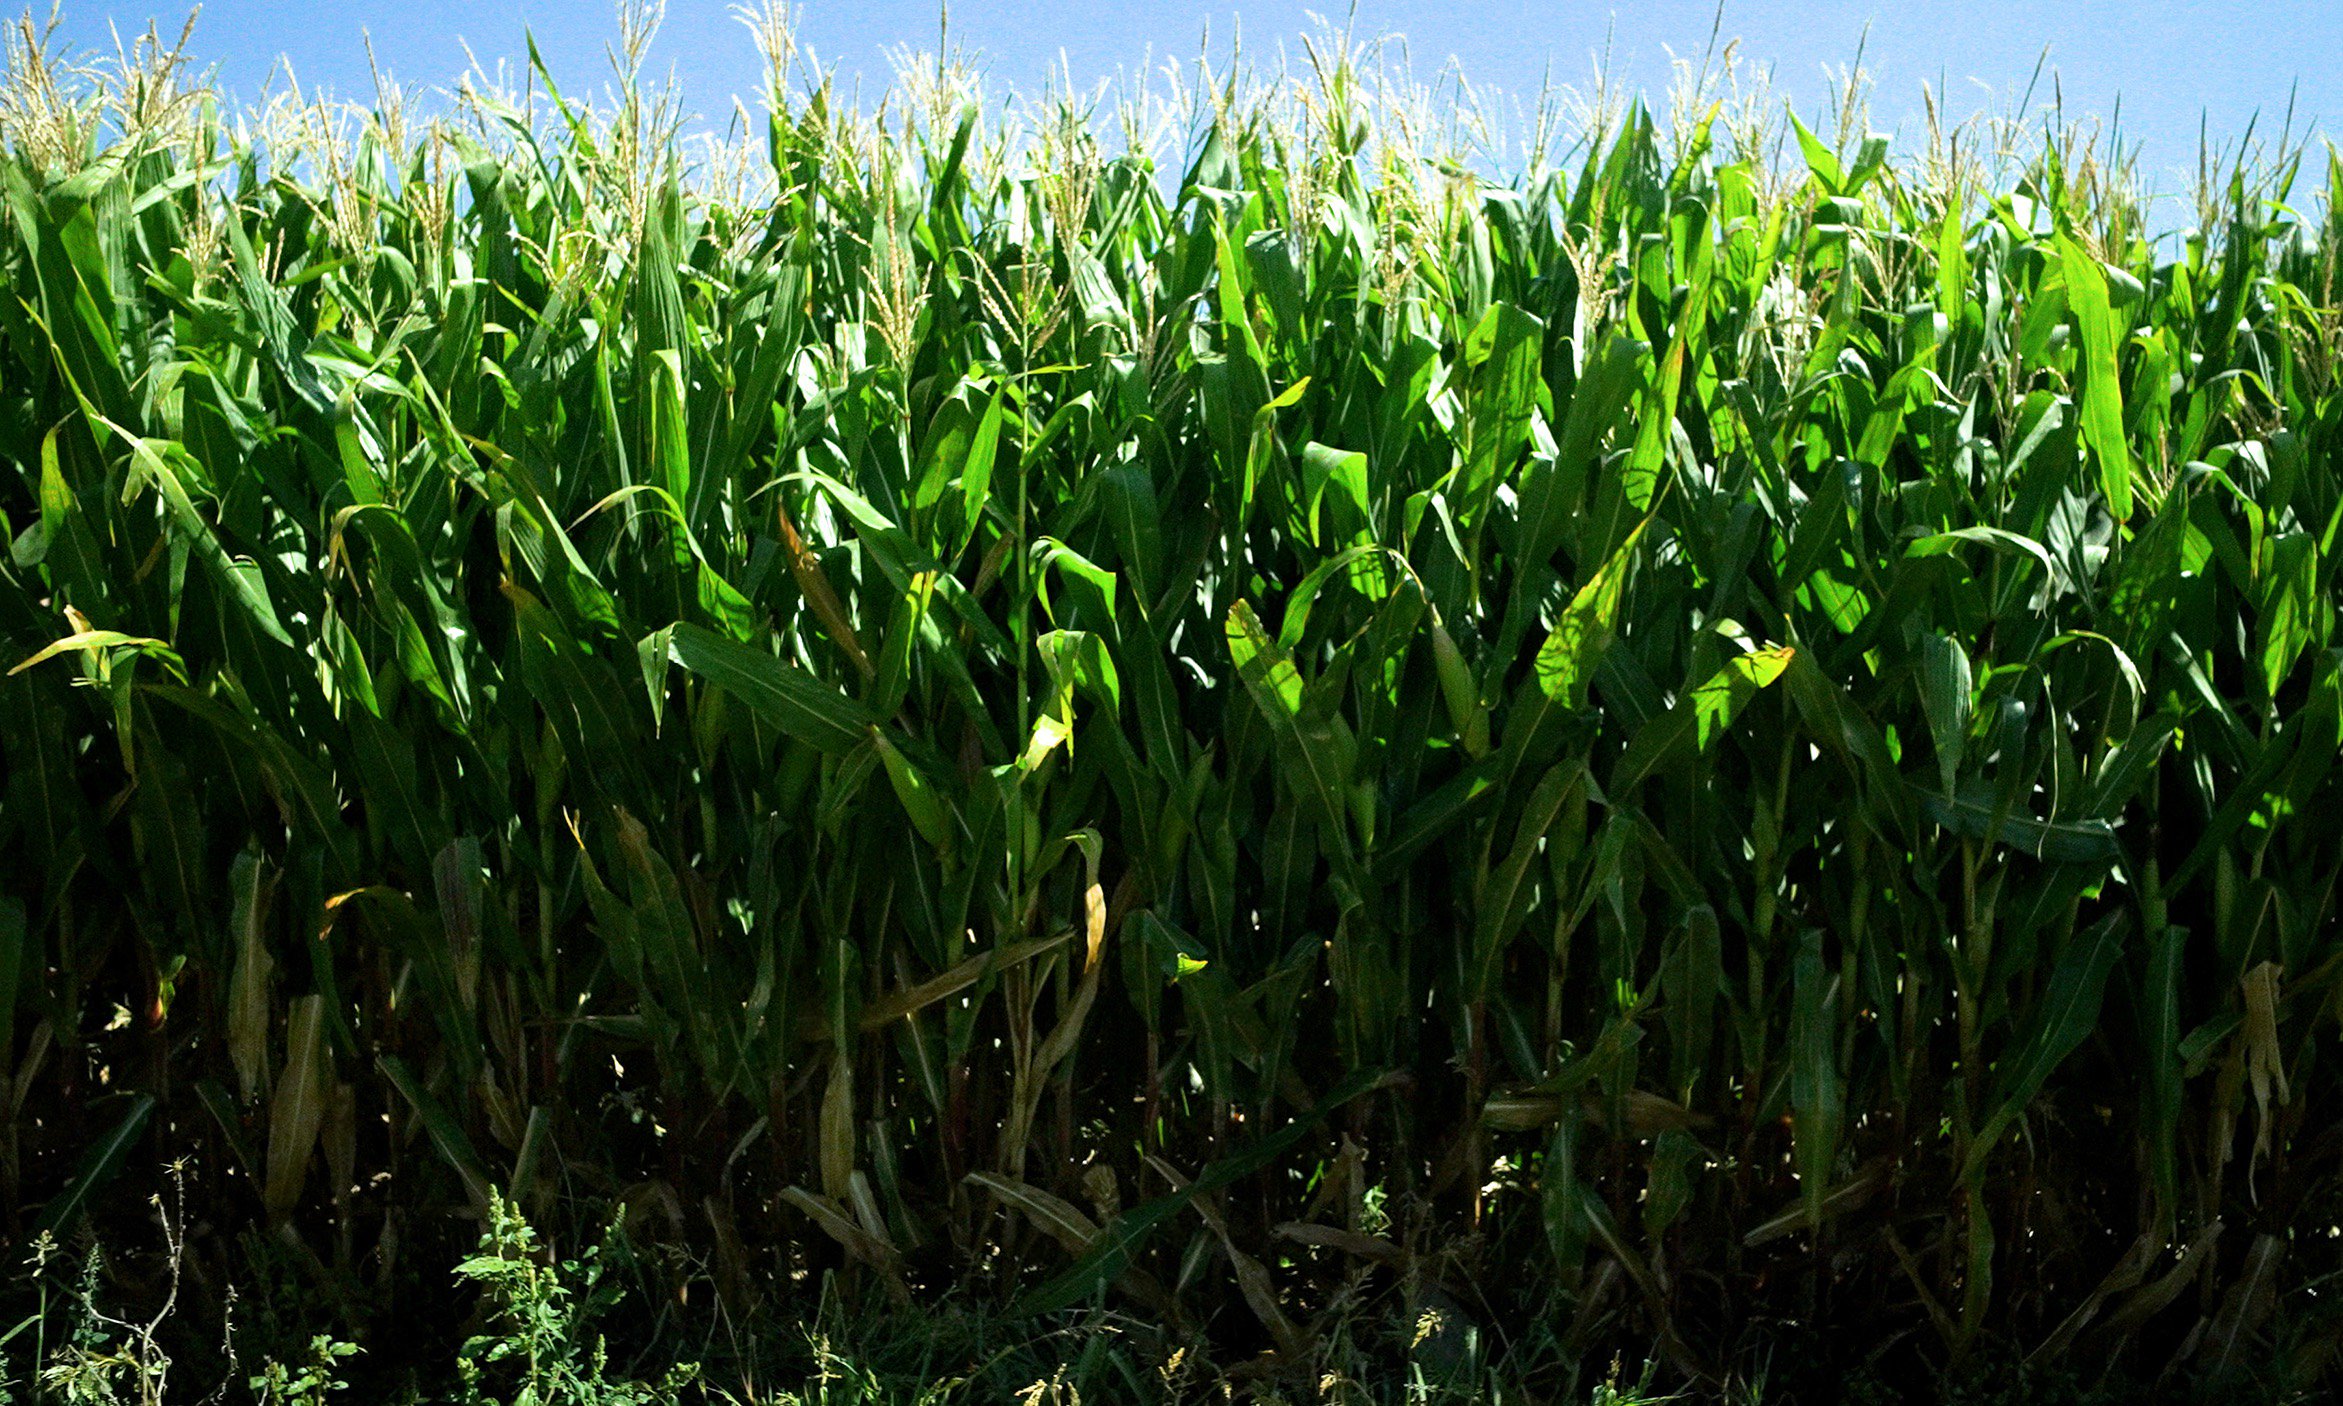 Corn stalks growing in field